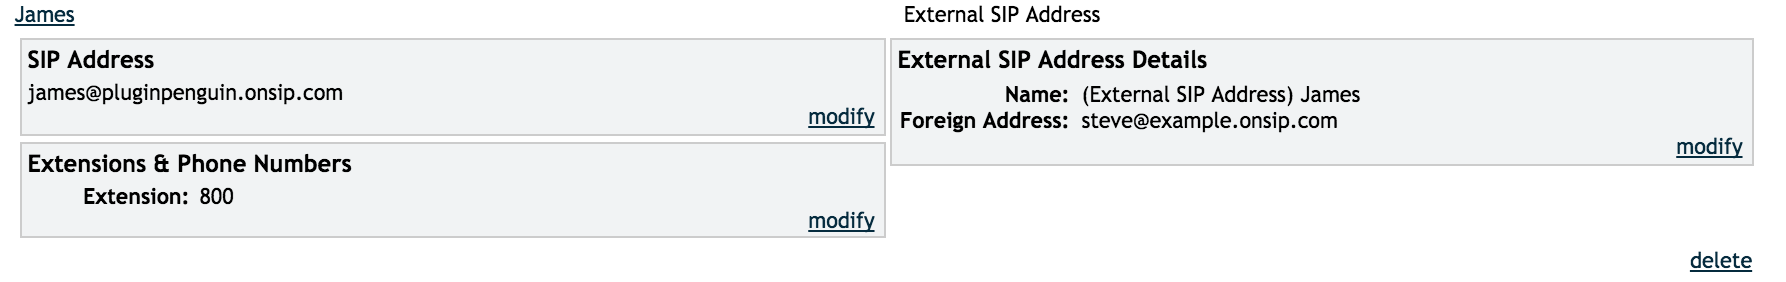 External SIP address